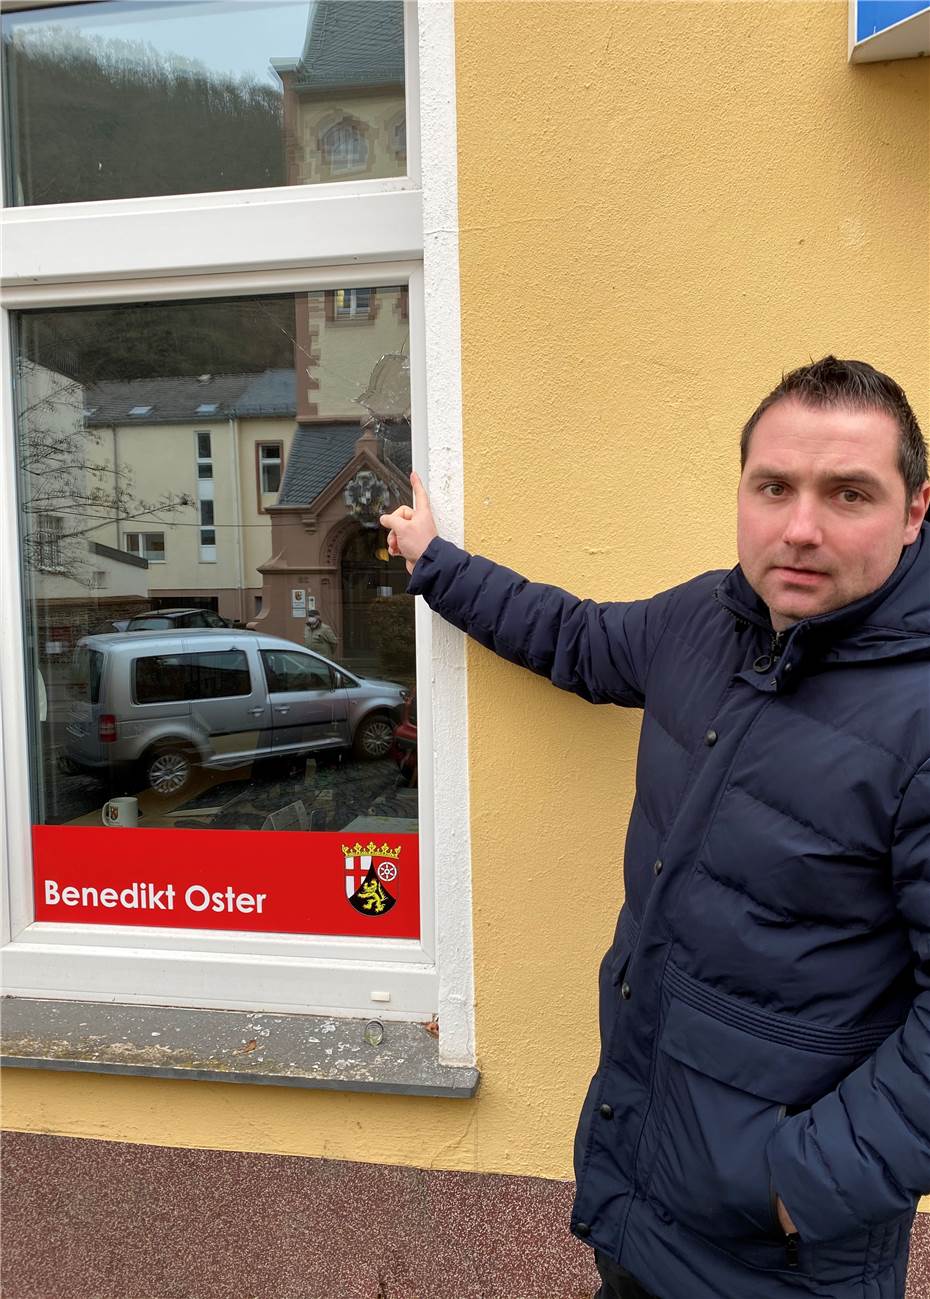 Angriff auf Abgeordnetenbüro von Benedikt Oster